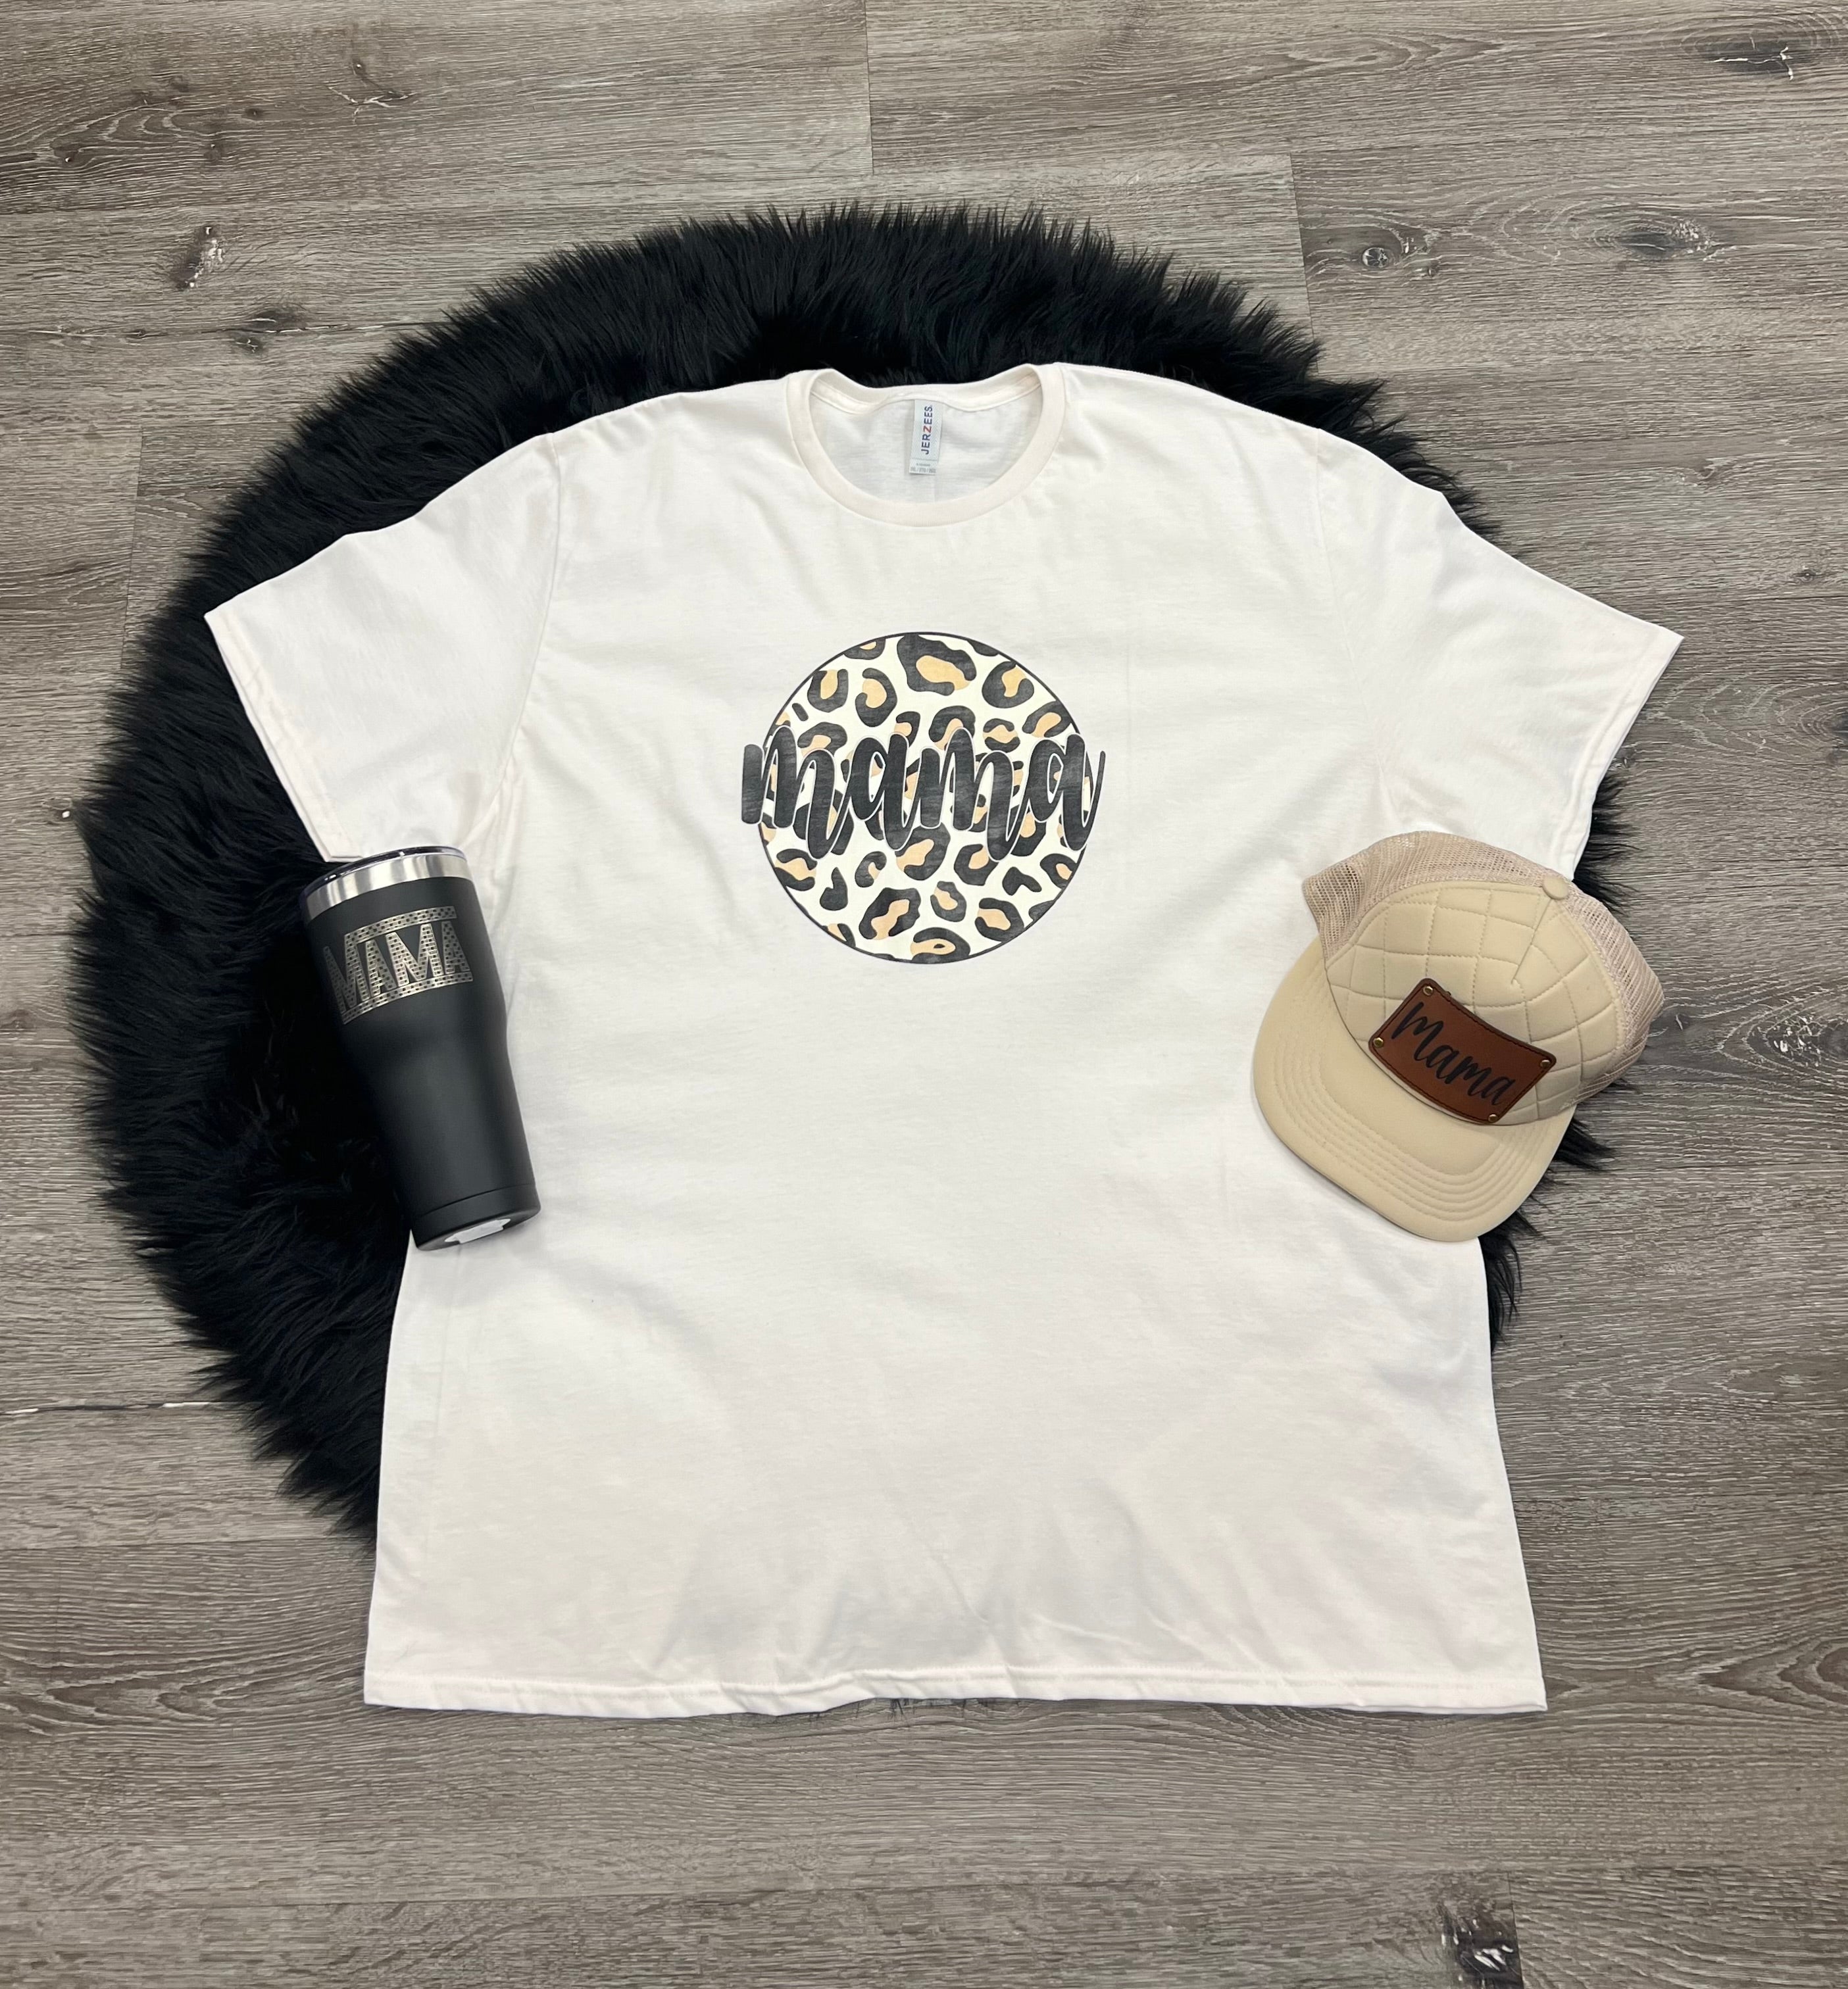 Leopard Mama Shirt